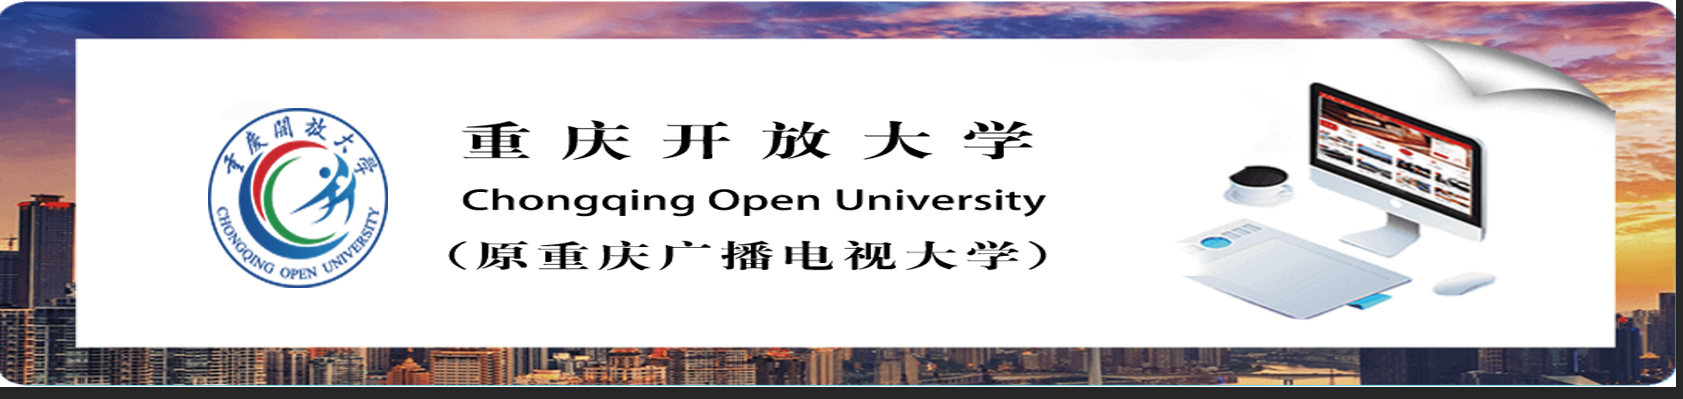 重庆开放大学